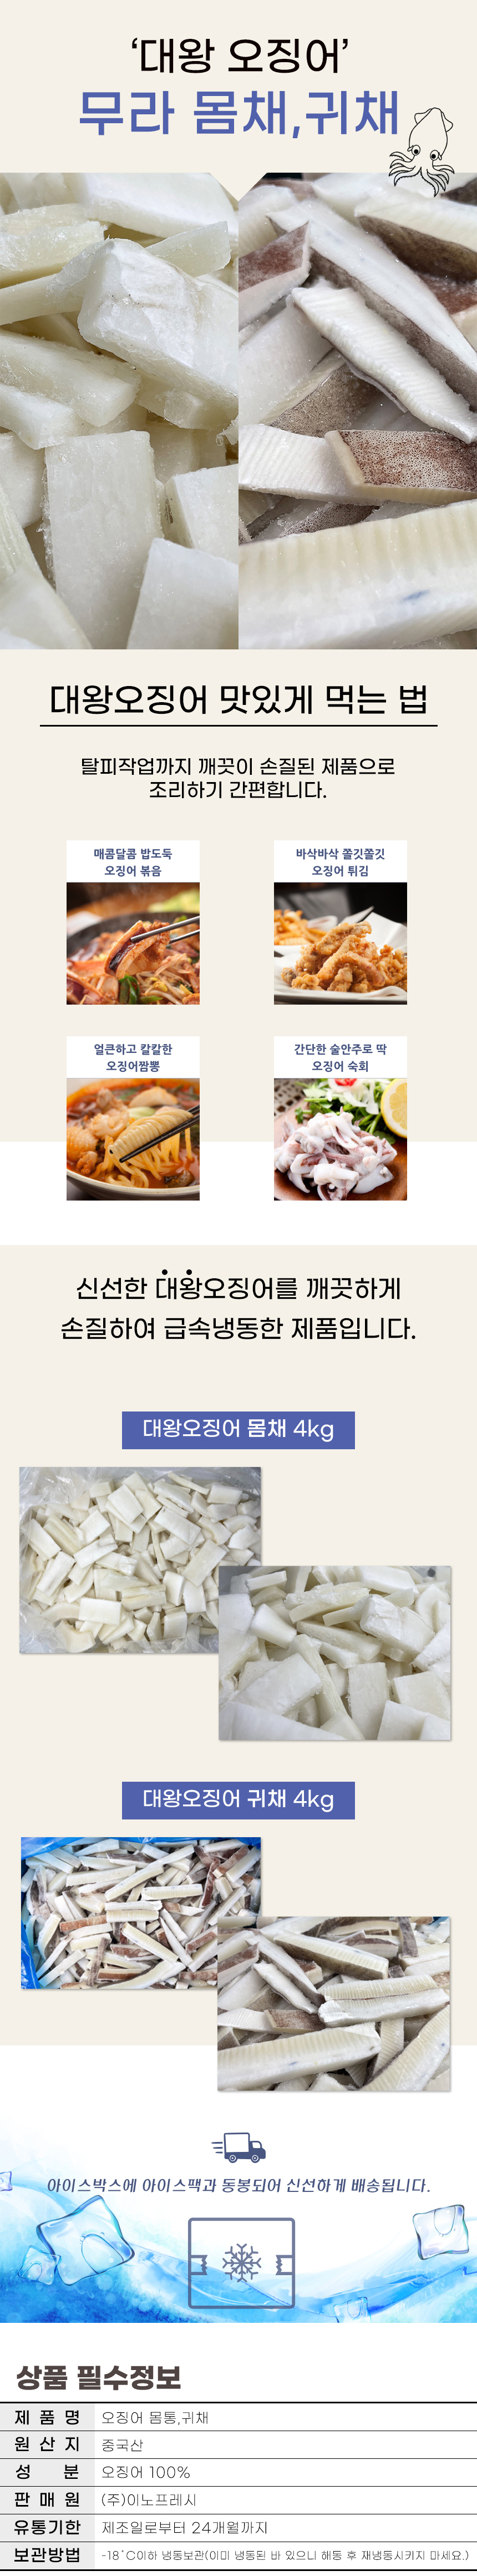 냉동대왕오징어채 2kg 귀채